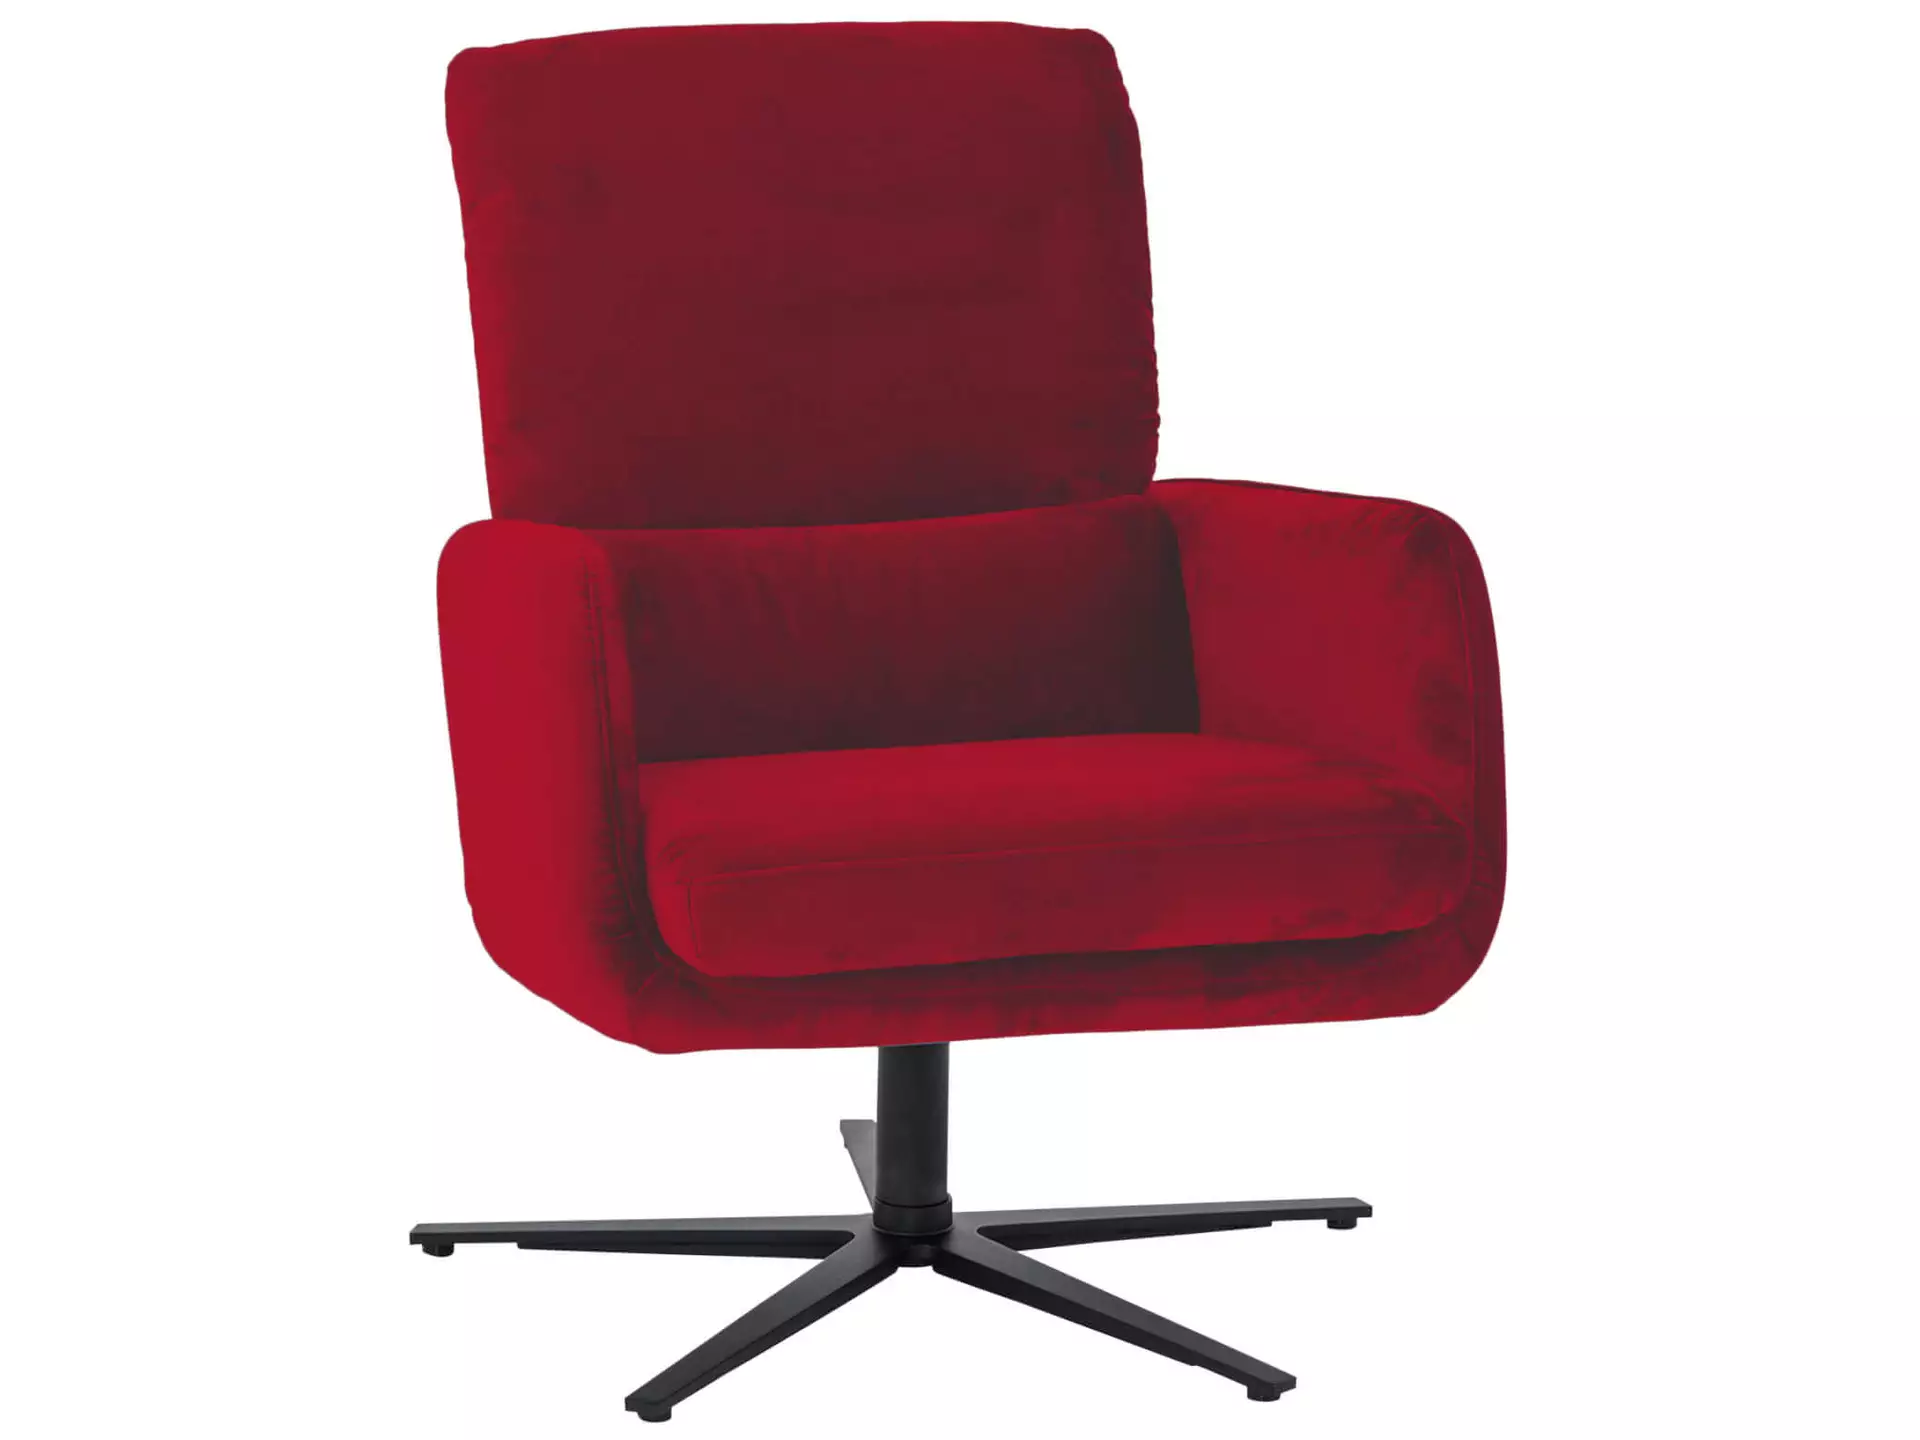 Sessel 8155 Basic Himolla / Farbe: Rosso / Material: Leder Basic